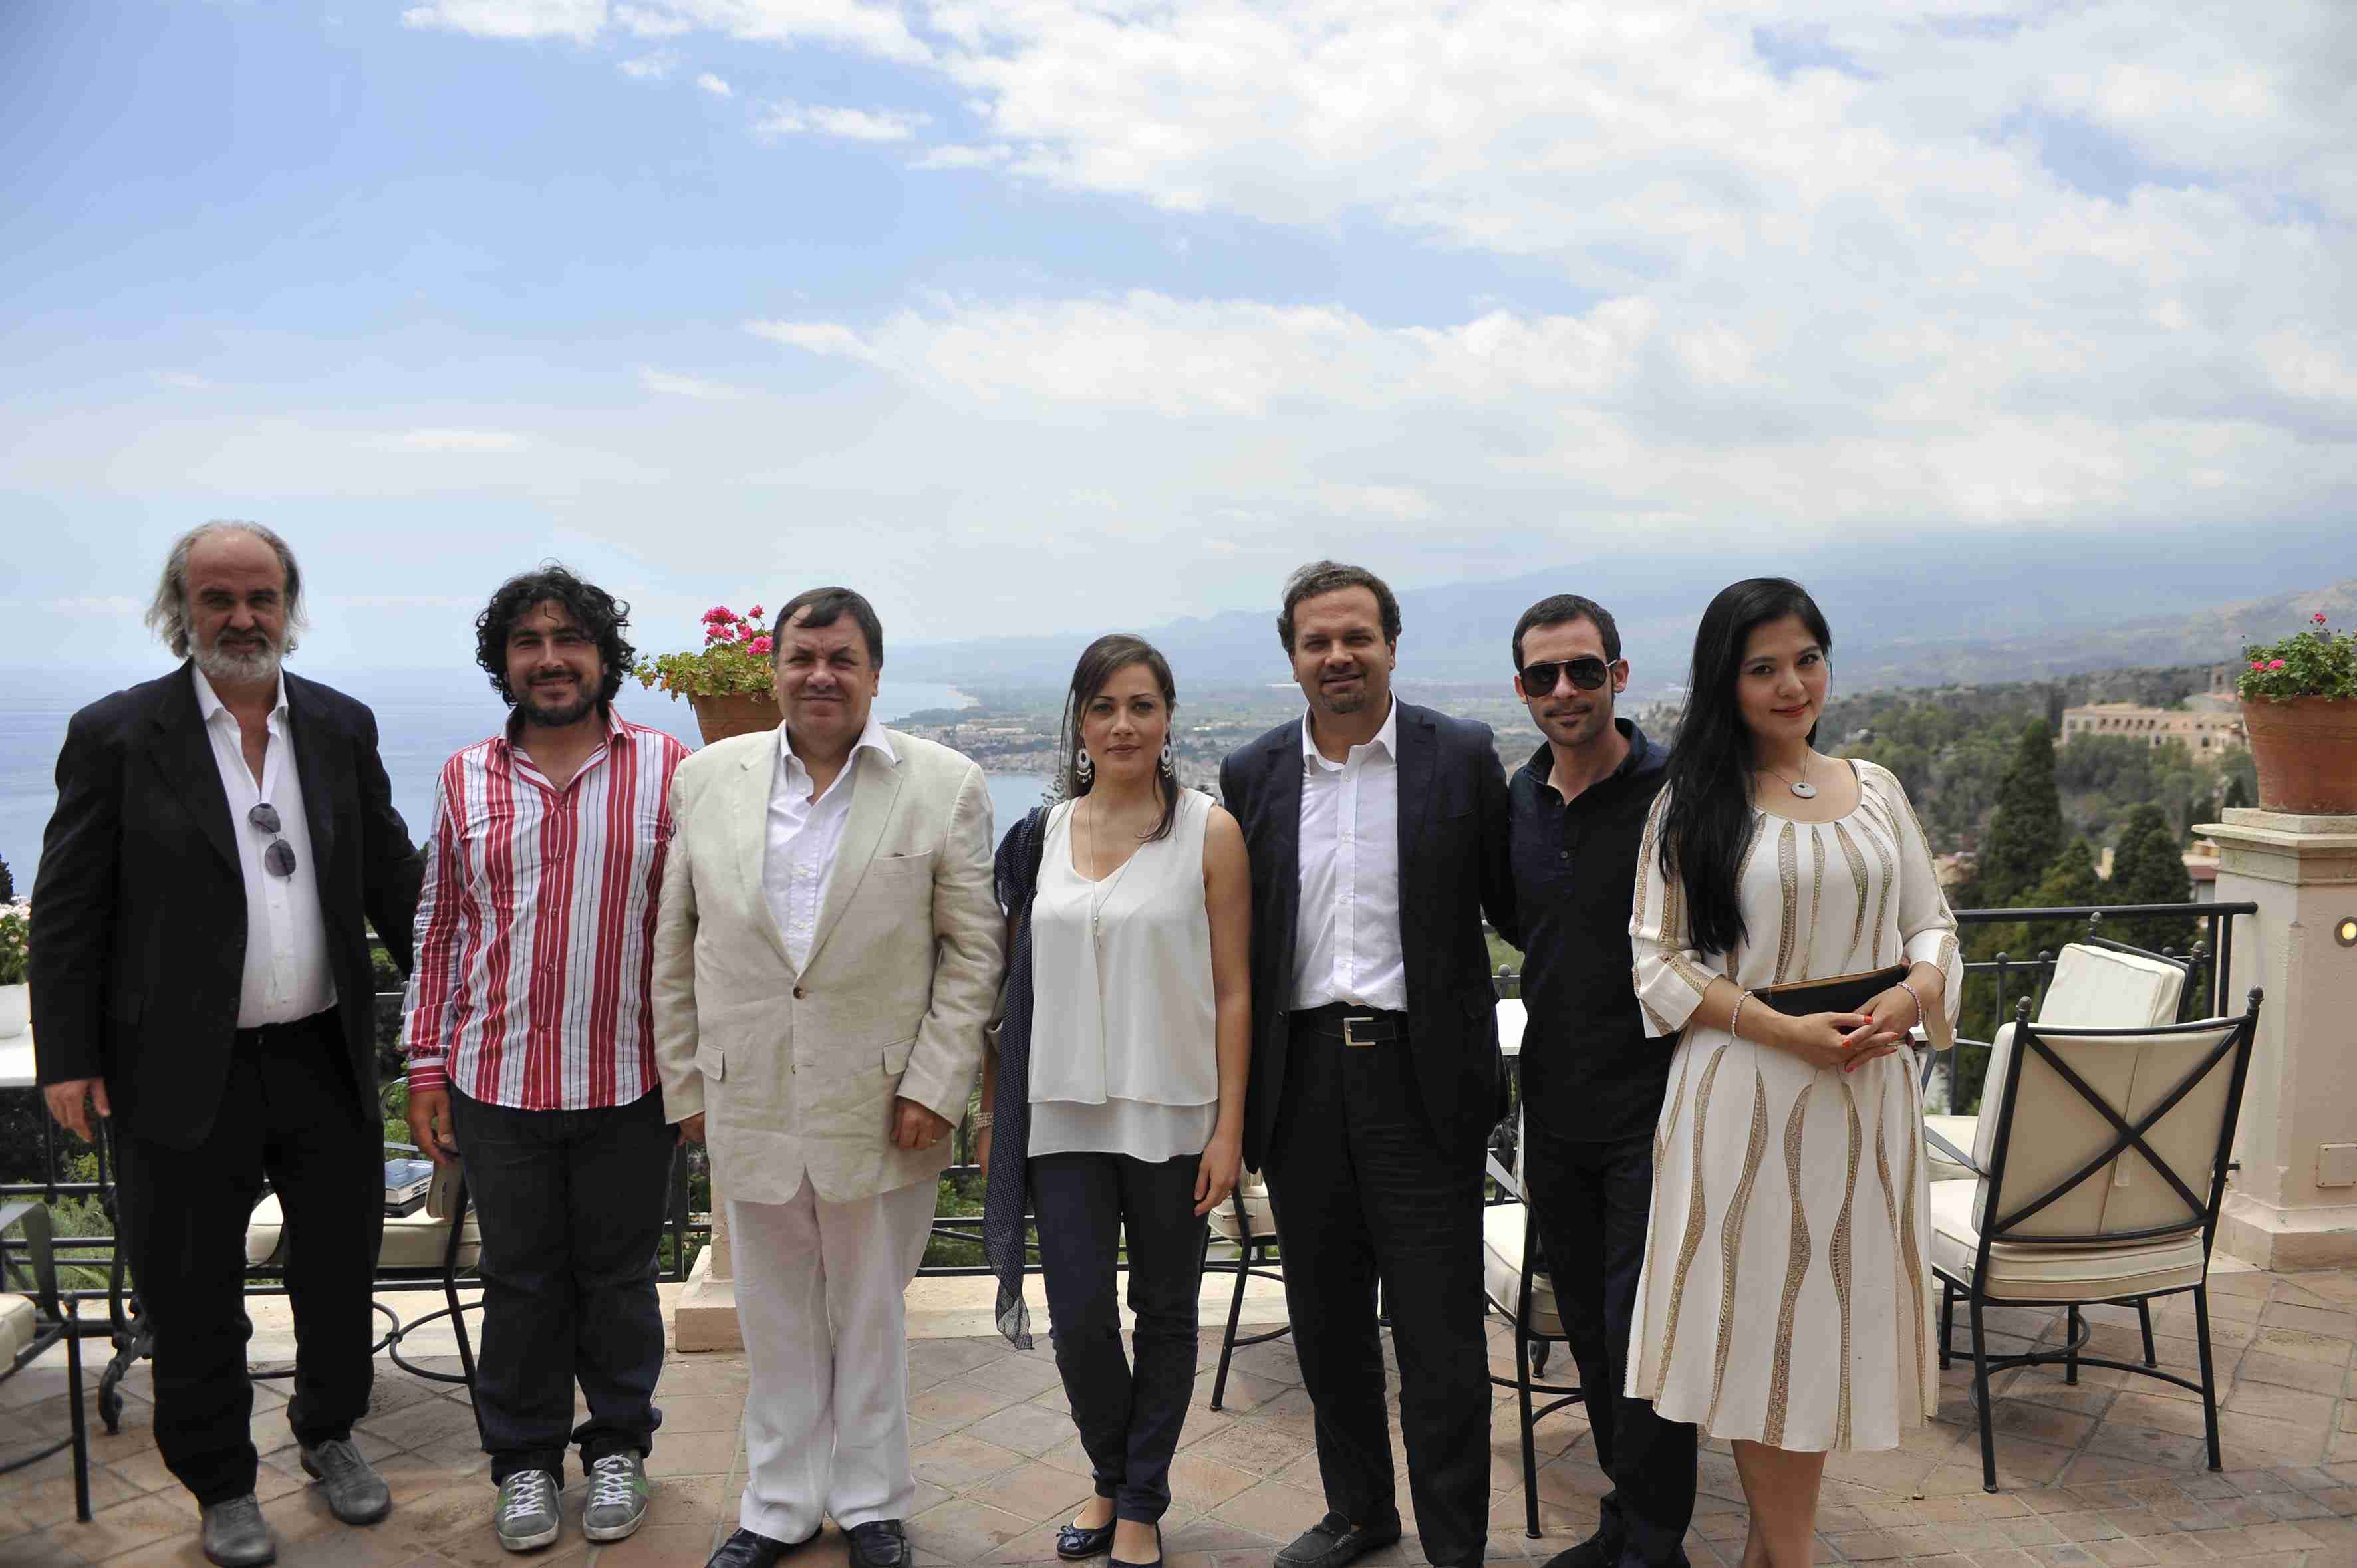 TAORMINA ARTE - Il Teatro Antico di Taormina è pronto ad accogliere tre allestimenti operistici firmati dal regista e direttore artistico Enrico Castiglione